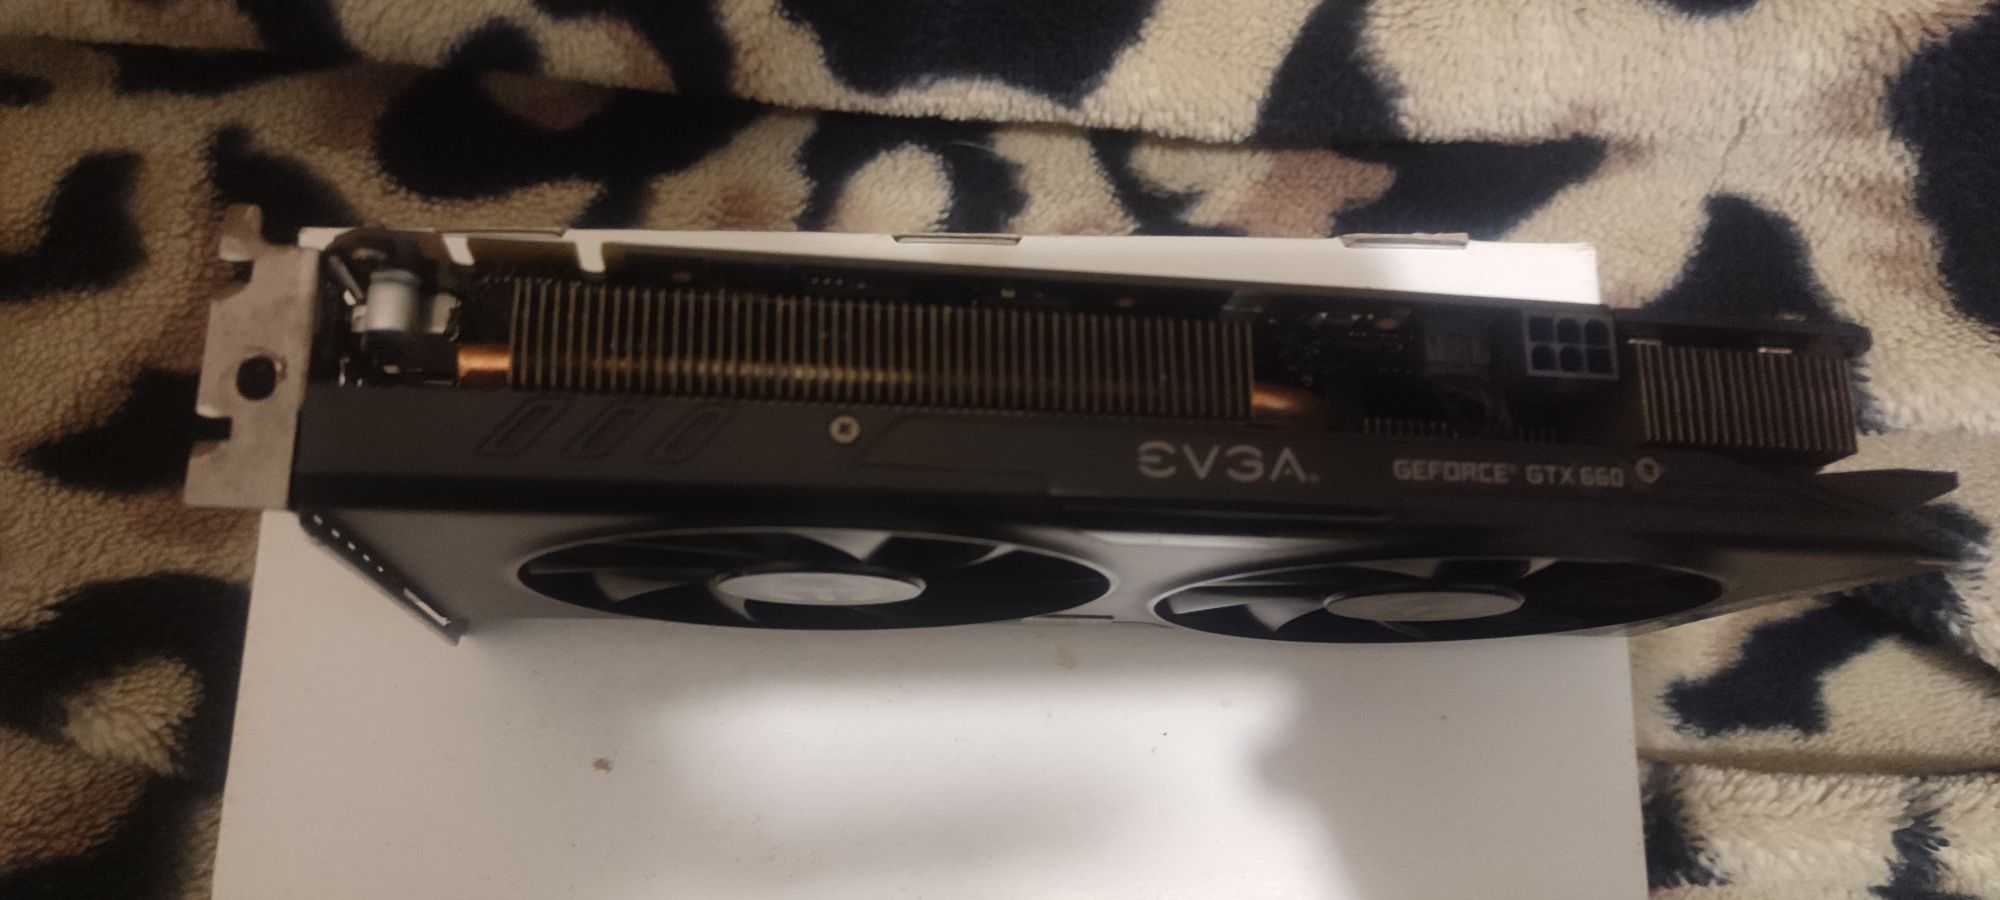 Продаю видеокарту Evga GeForce Gtx660 2 gb